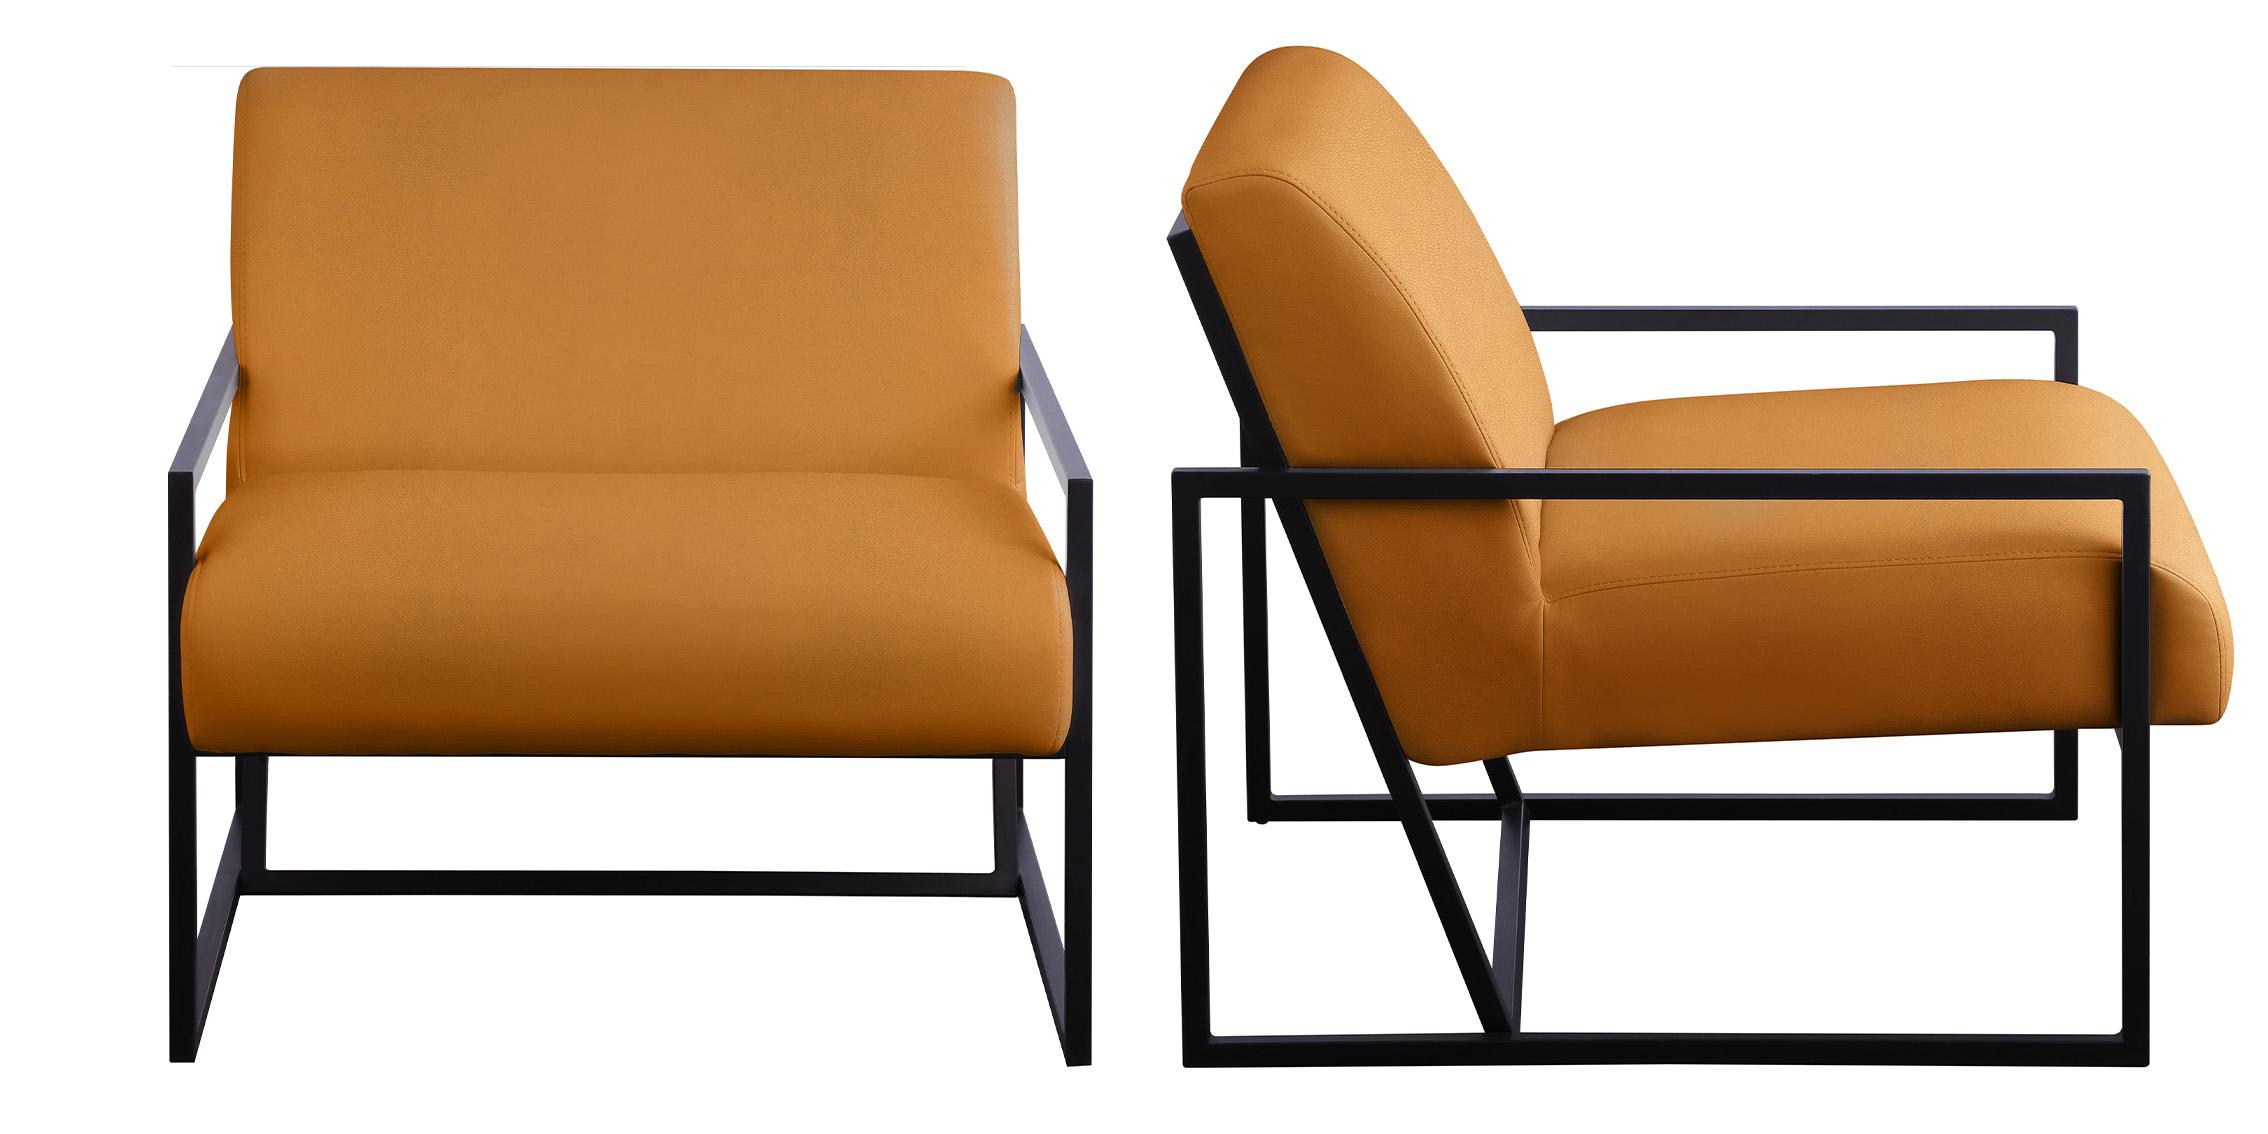 

    
535Cognac Cognac Faux Leather & Black Metal Chair INDUSTRY 535Cognac Meridian Contemporary
